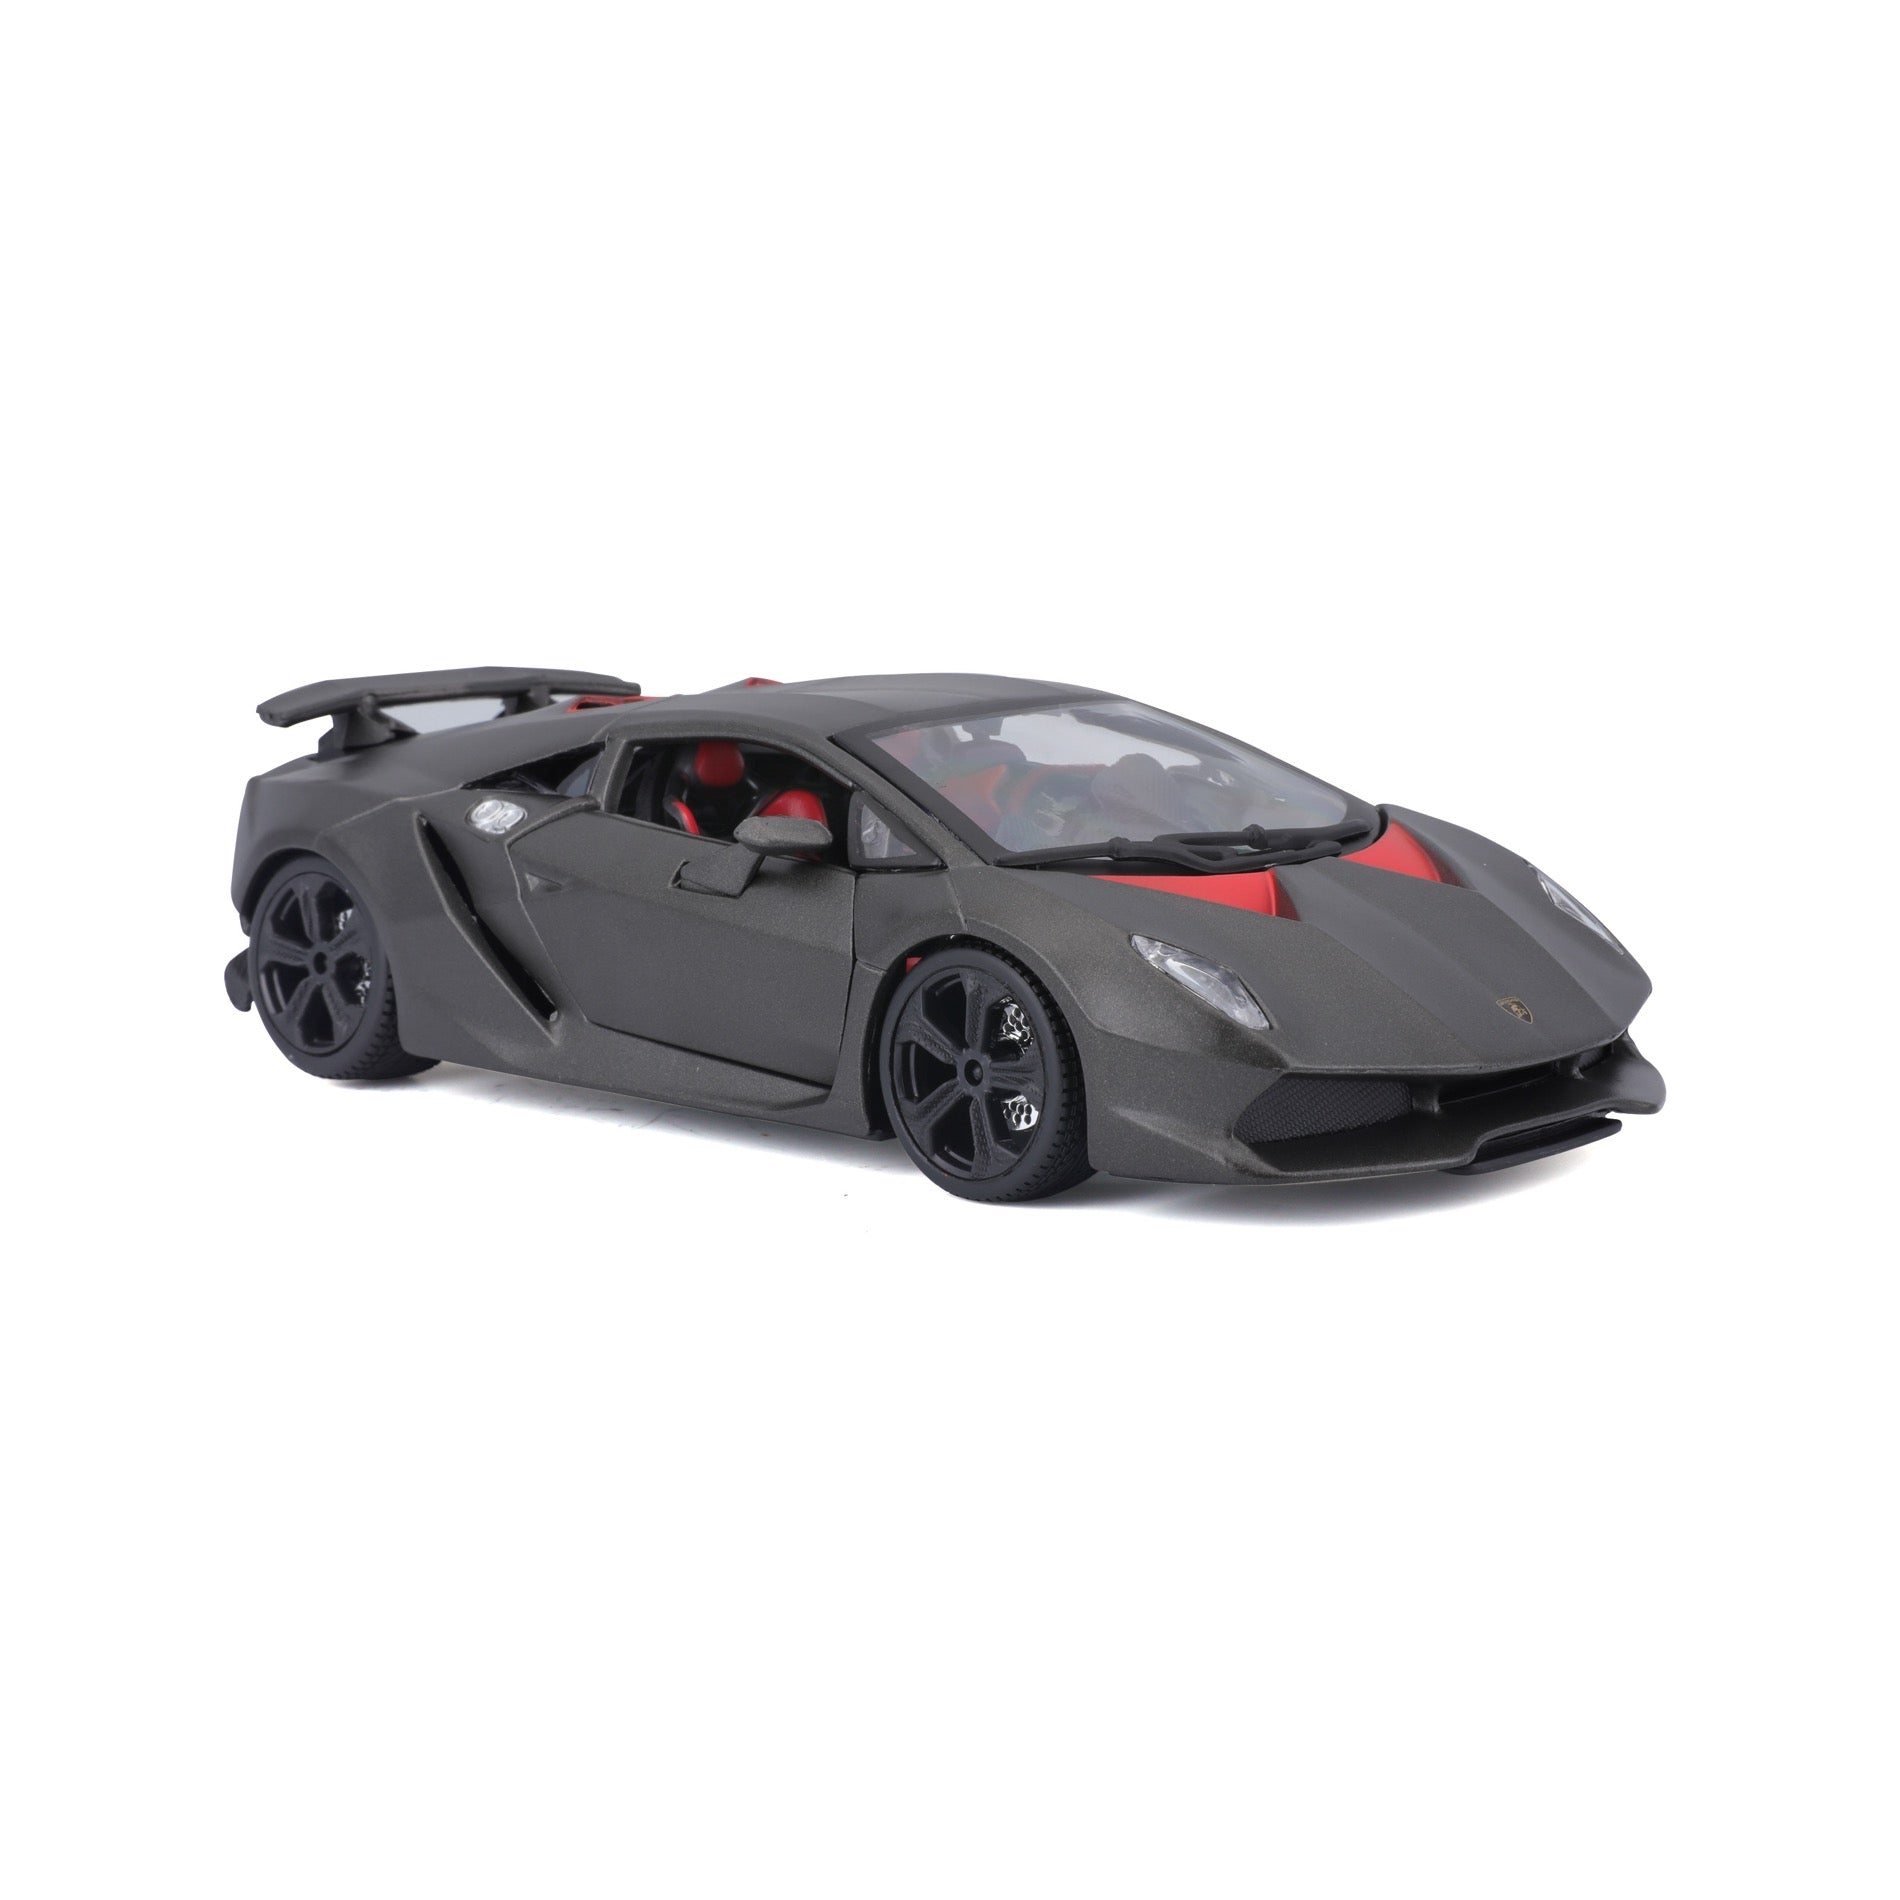 18-21061 Bburago 1:24 Collezione - Lamborghini Sesto Elemento Met Grey